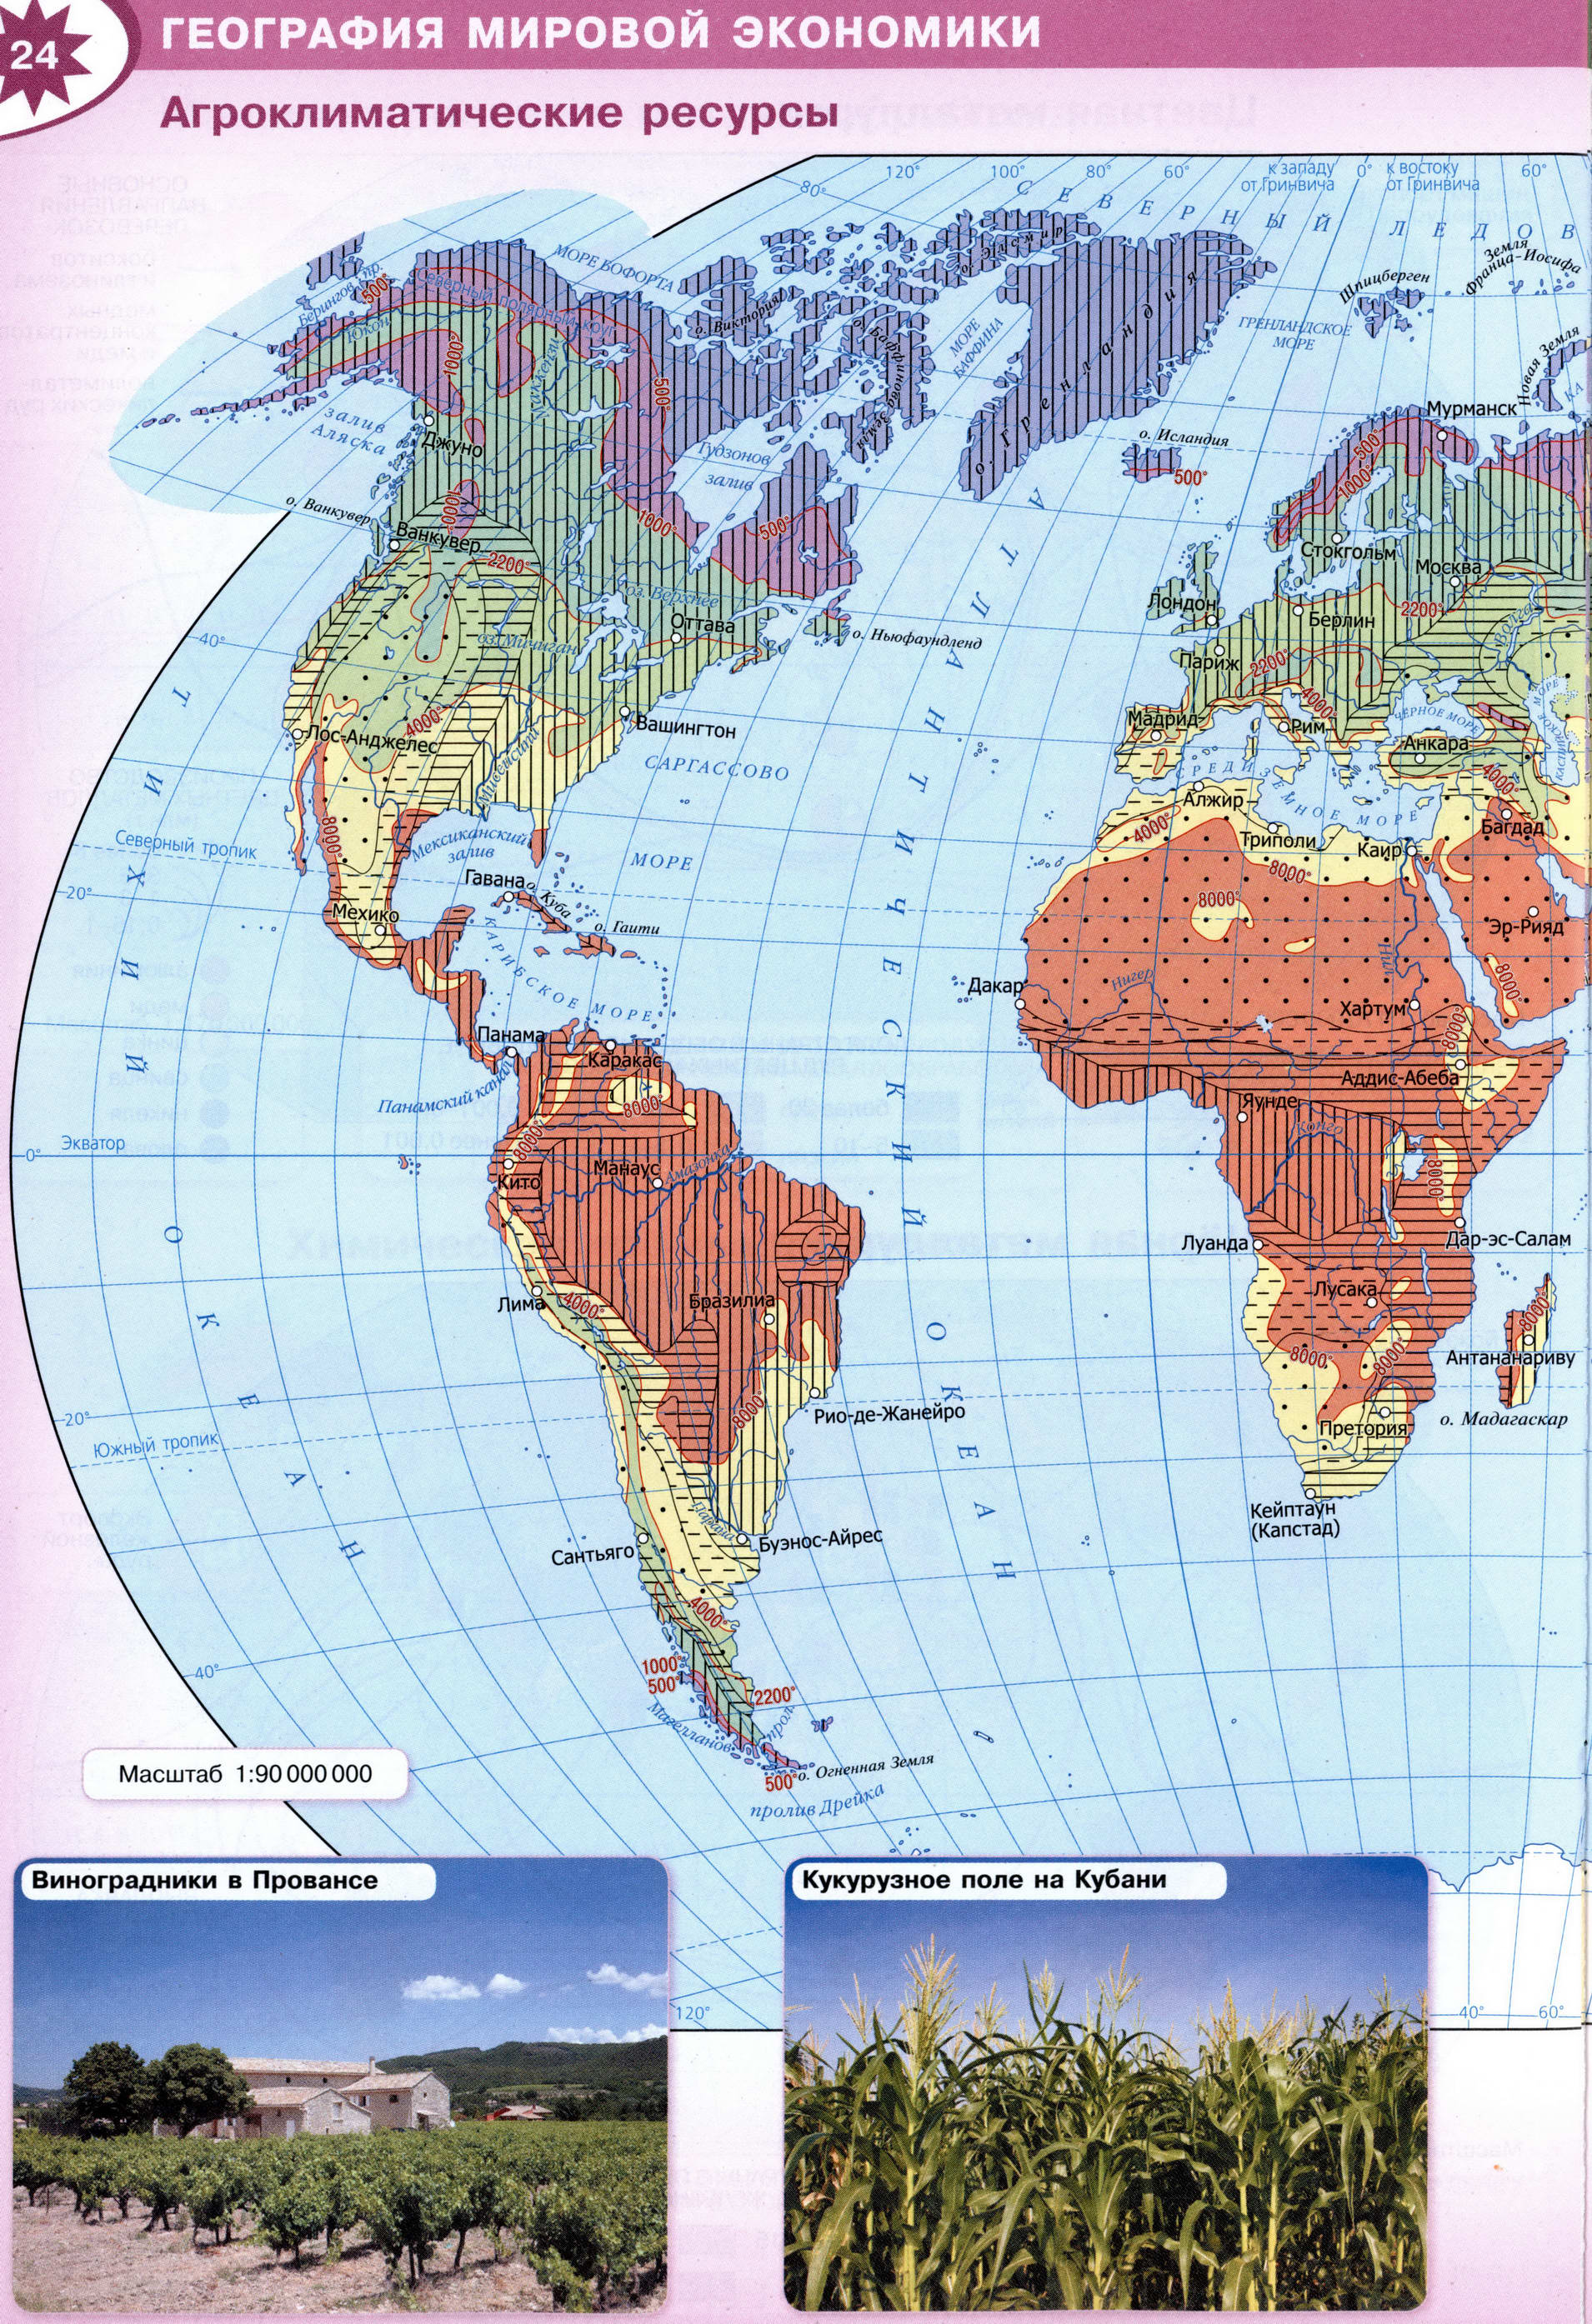 Агроклиматические ресурсы - Атлас 10-11 класс география Полярная звезда